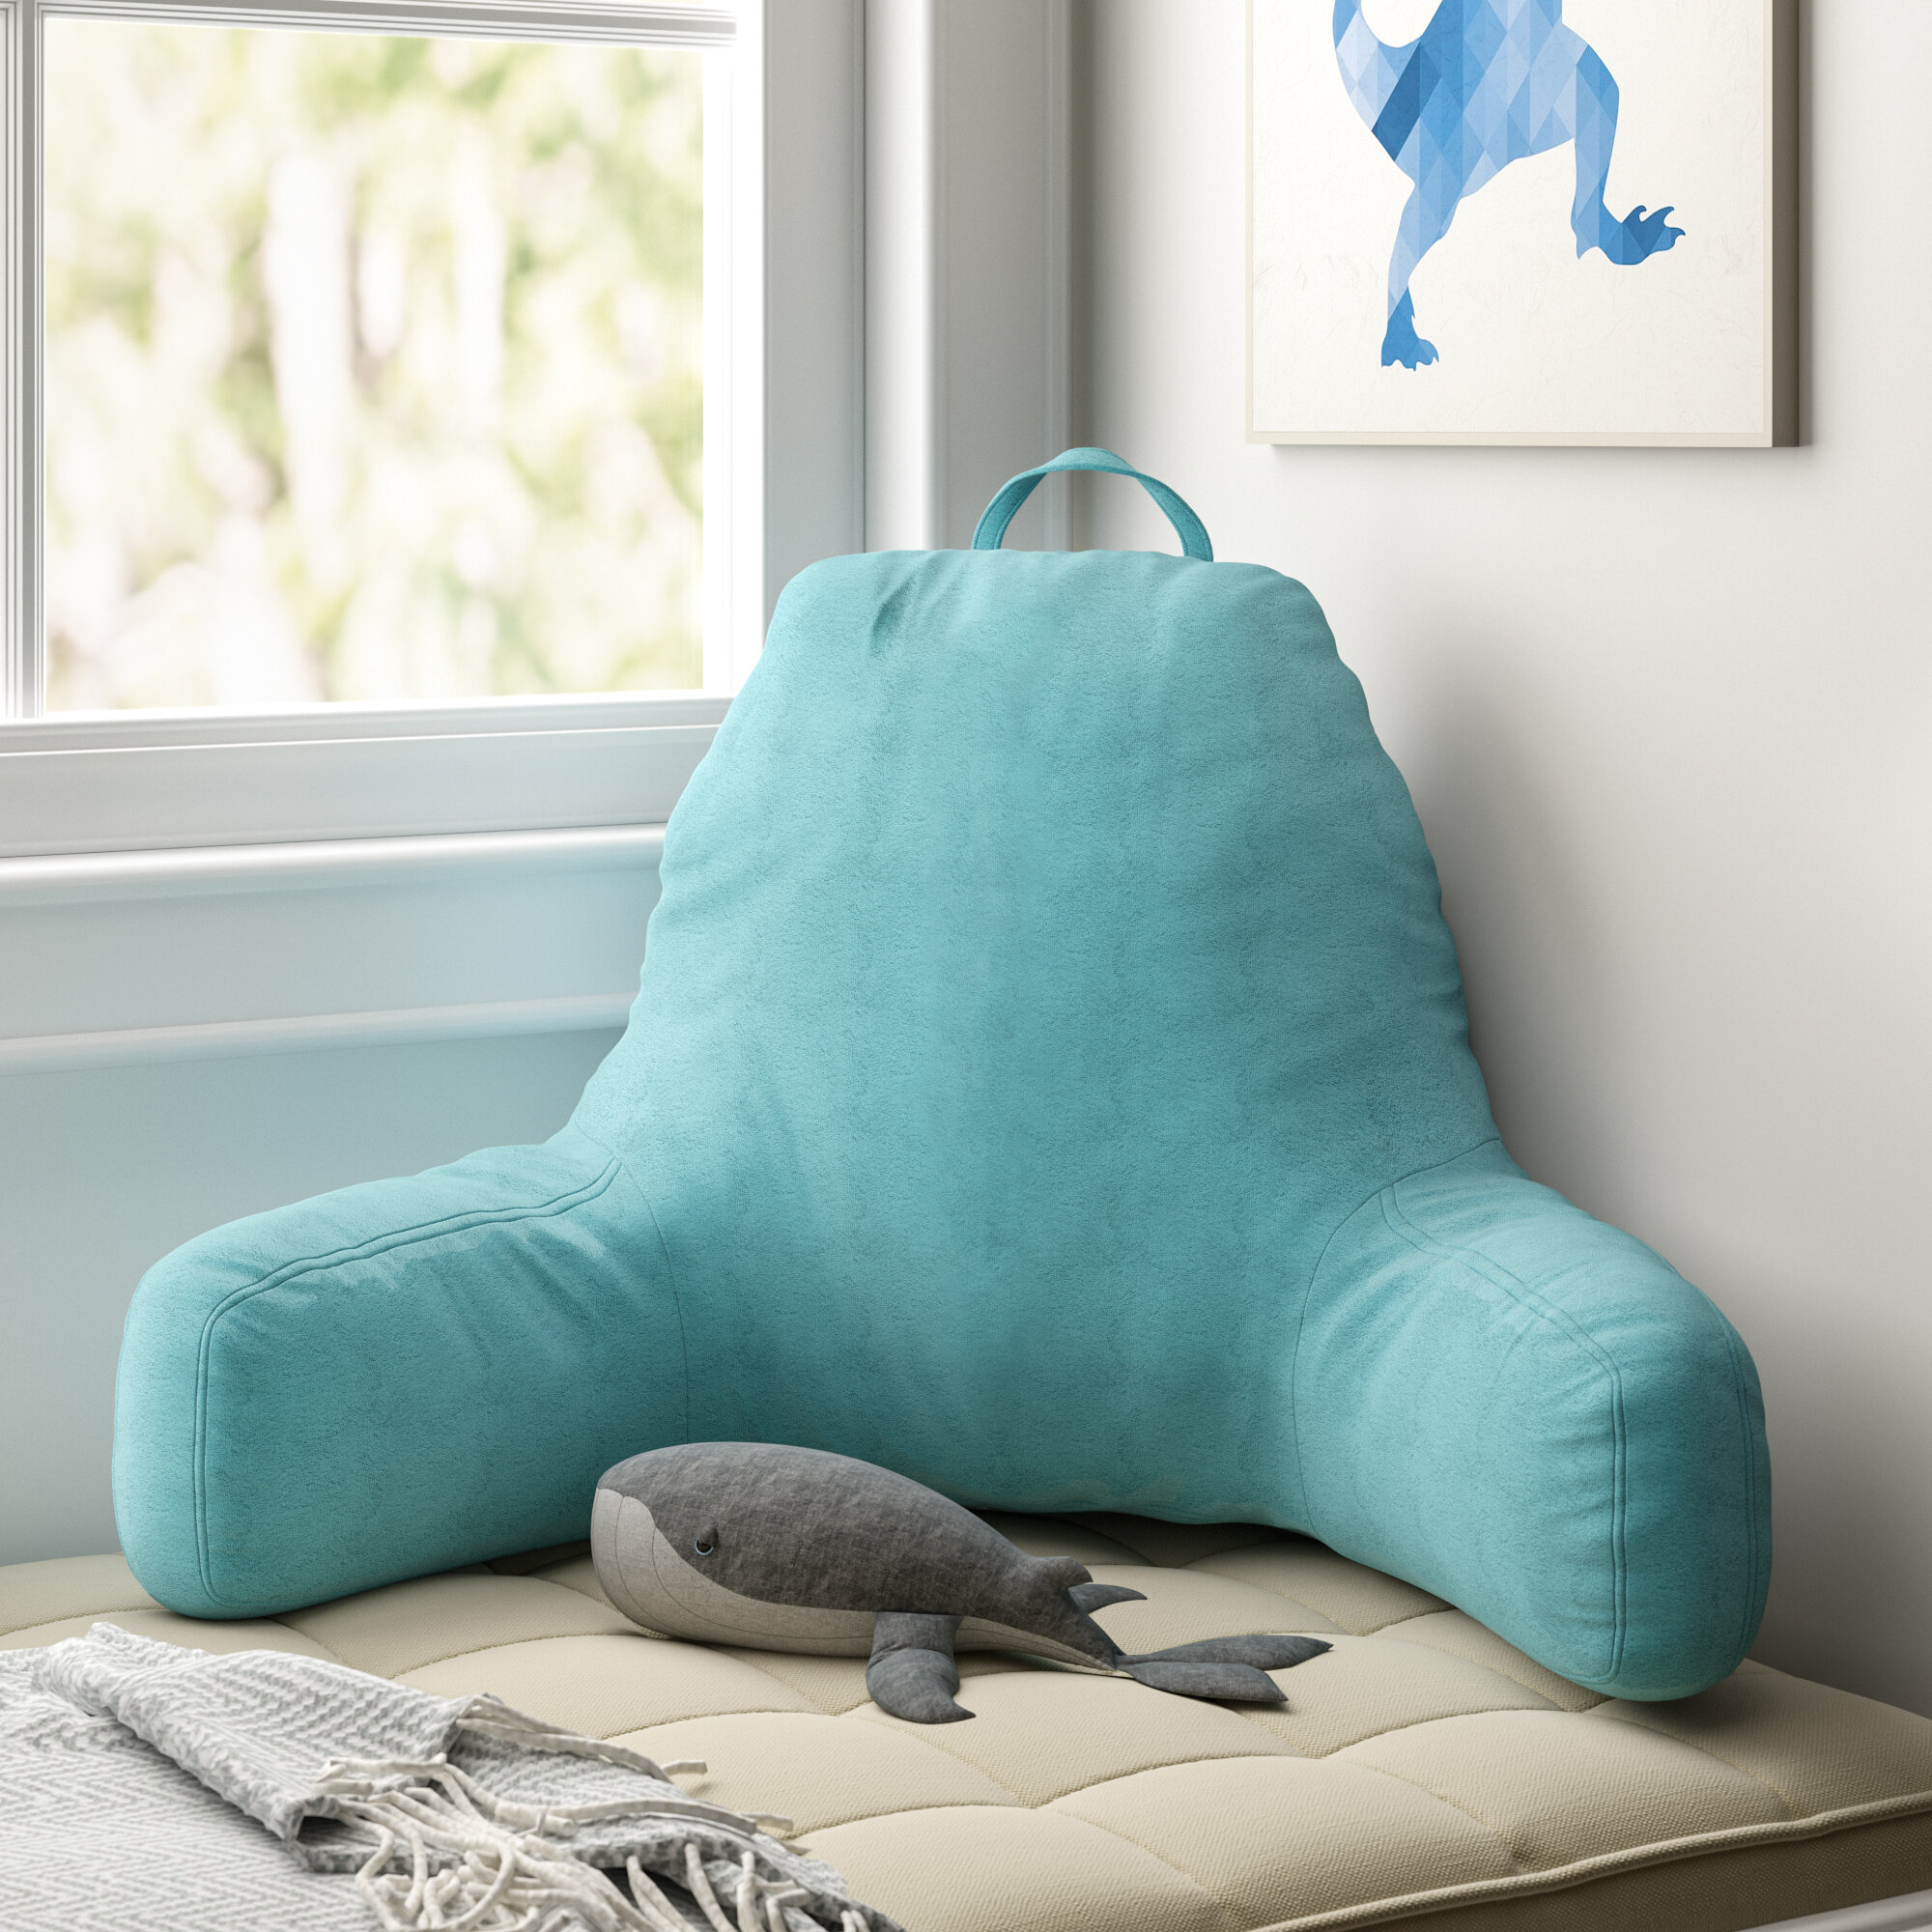 backrest pillow for recliner chair